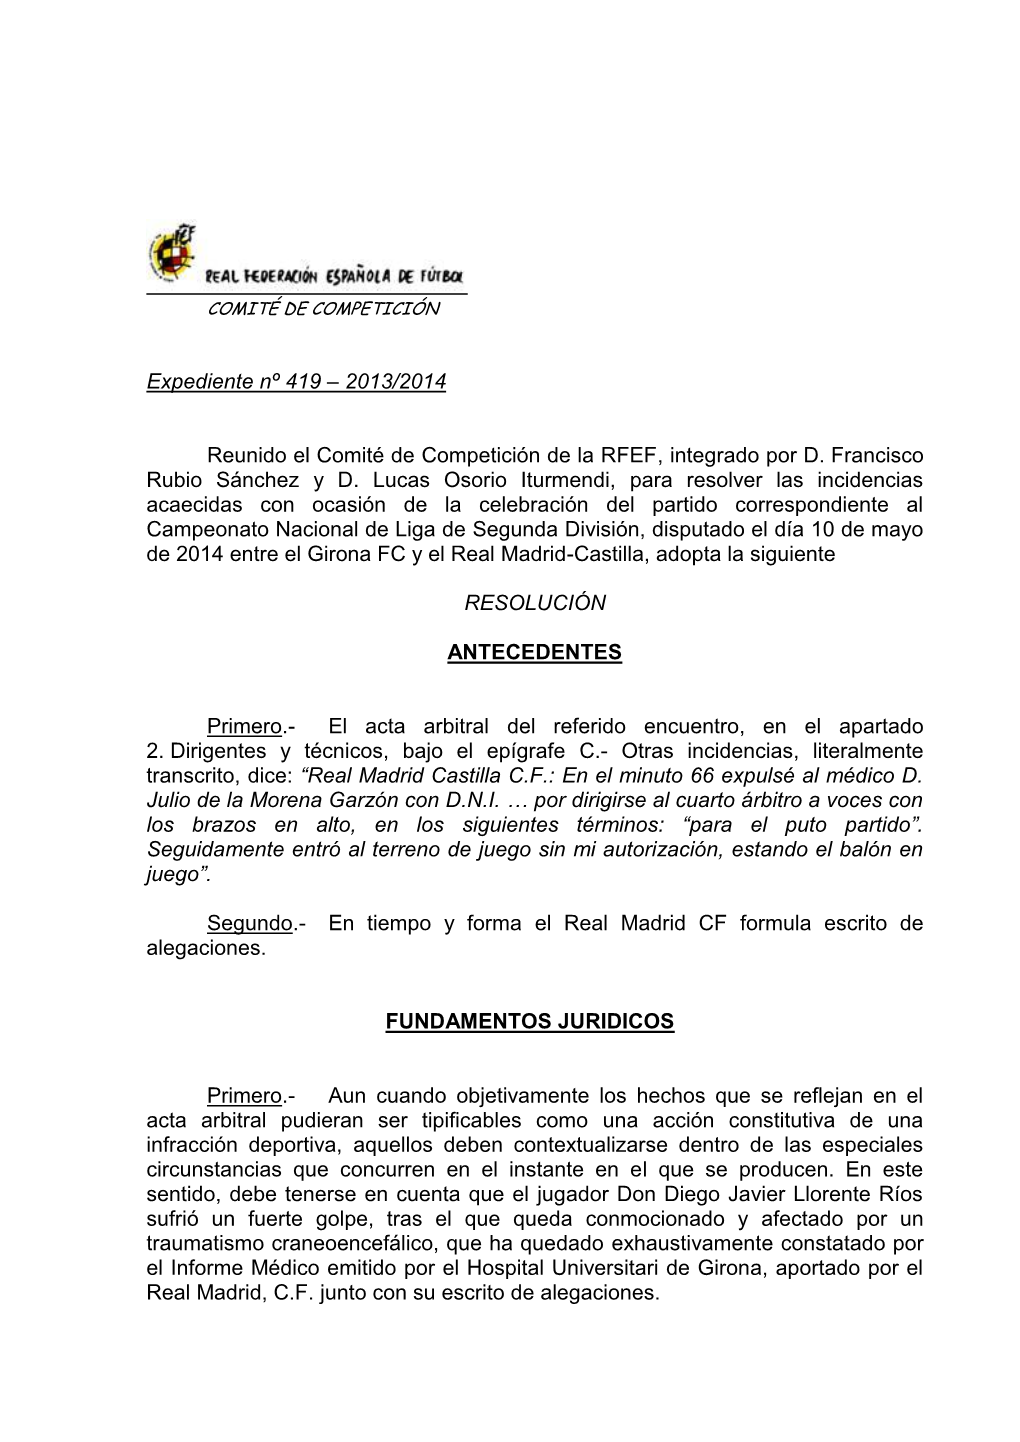 2013/2014 Reunido El Comité De Competición De La RFEF, Integrado